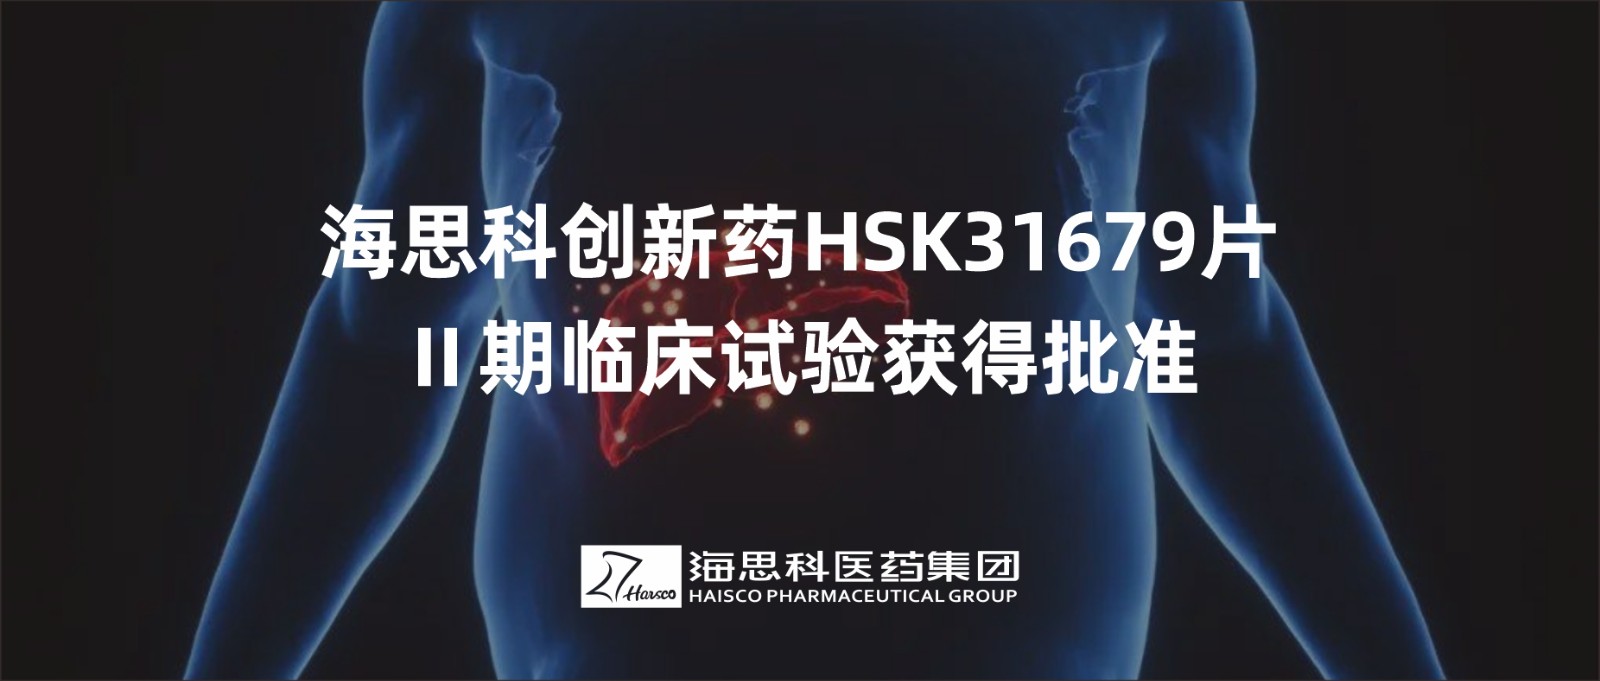 2138太阳诚娱乐官网创新药HSK31679片Ⅱ期临床试验获得批准